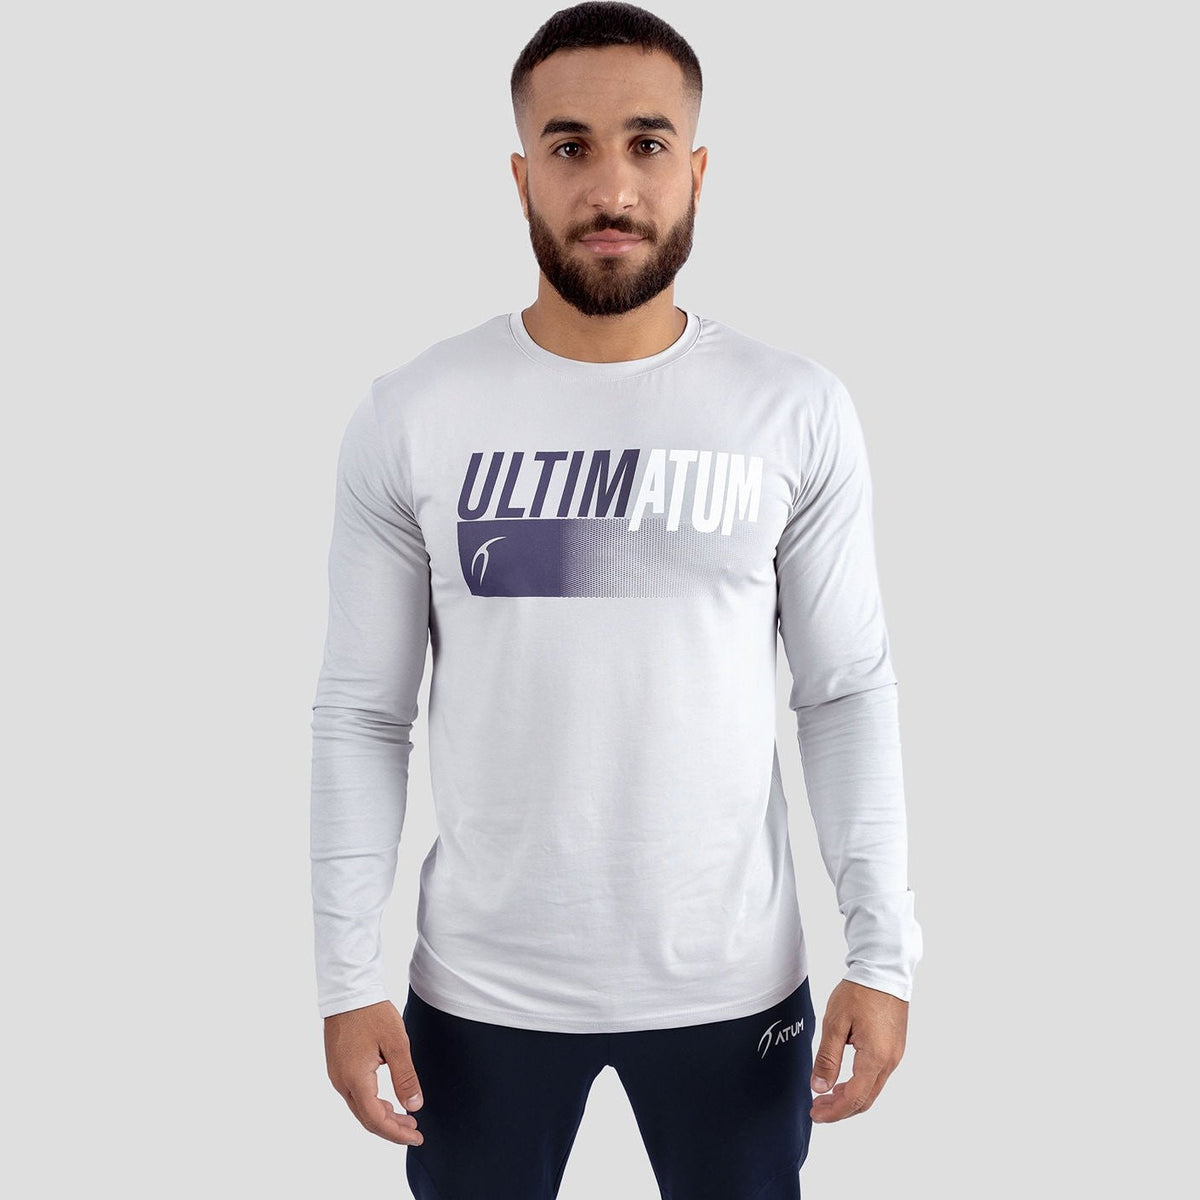 Atum Men's optimum t-shirt